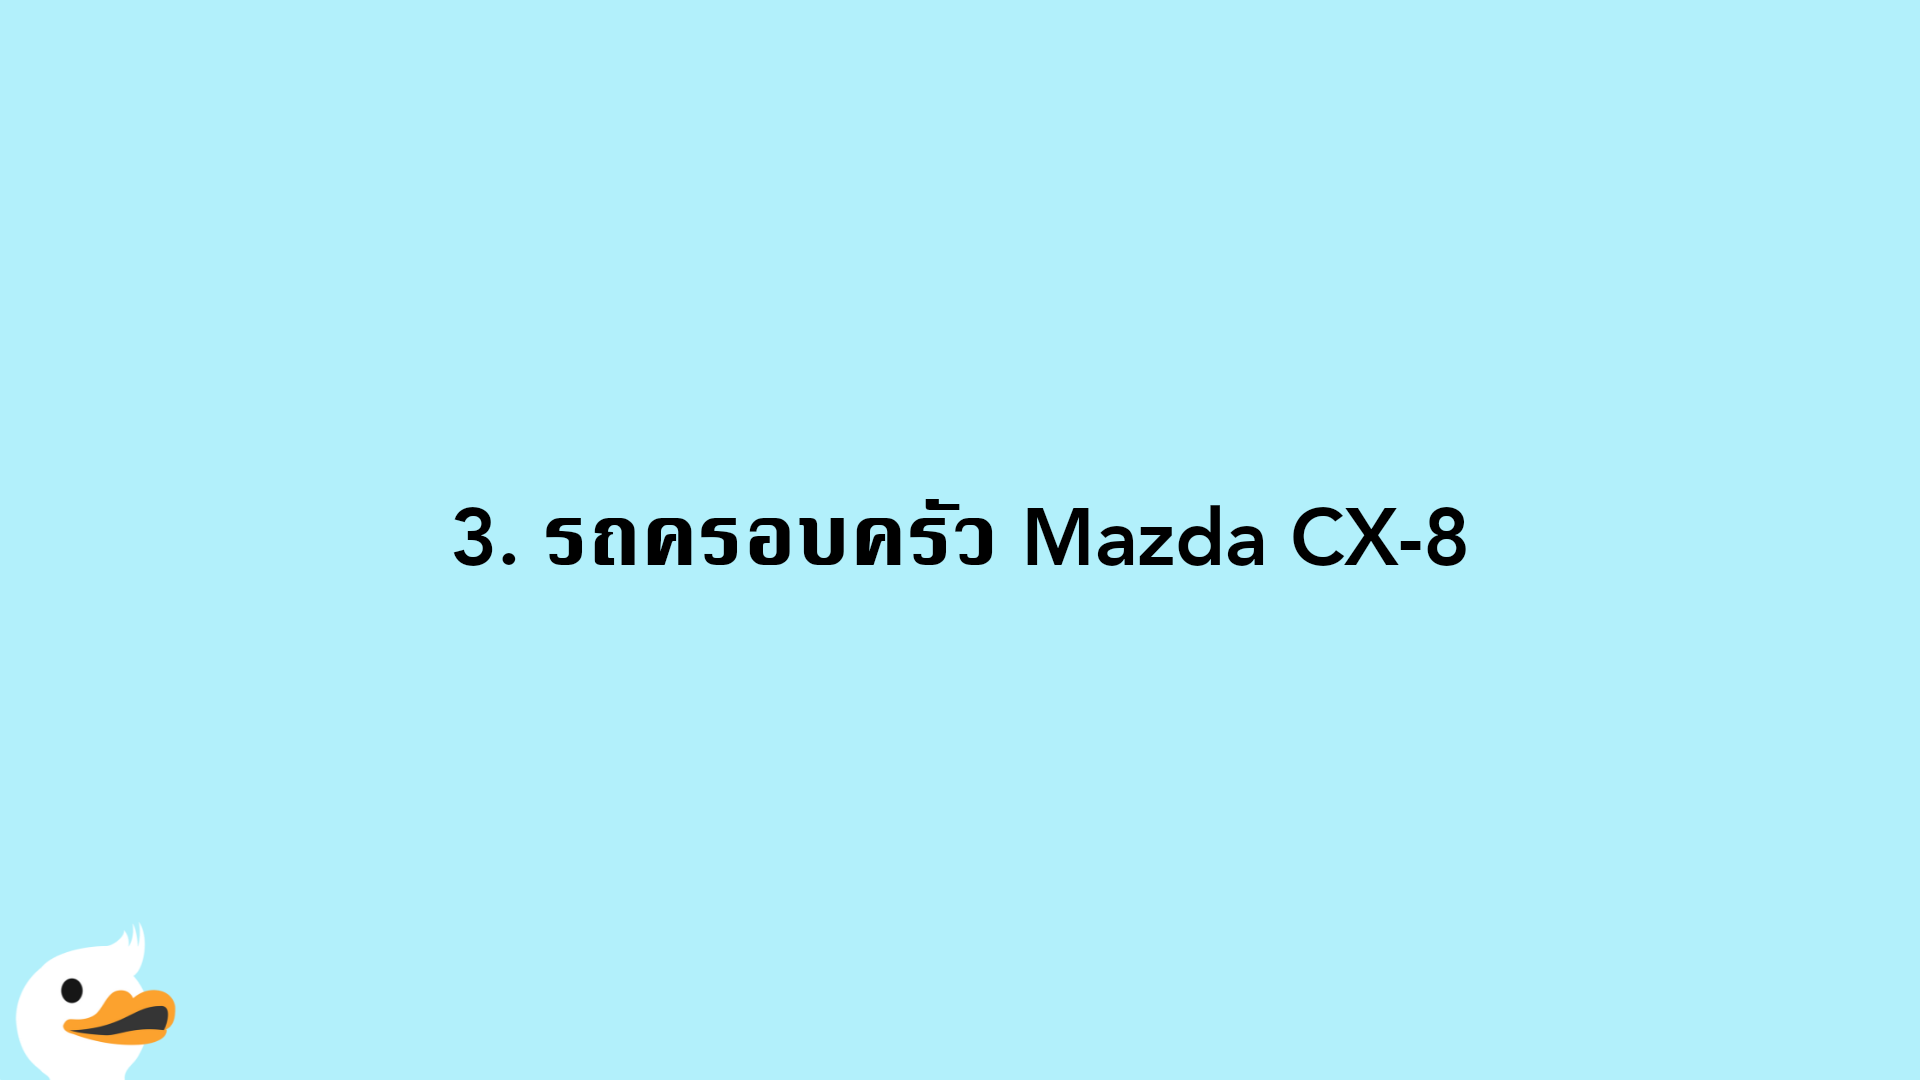 3. รถครอบครัว Mazda CX-8